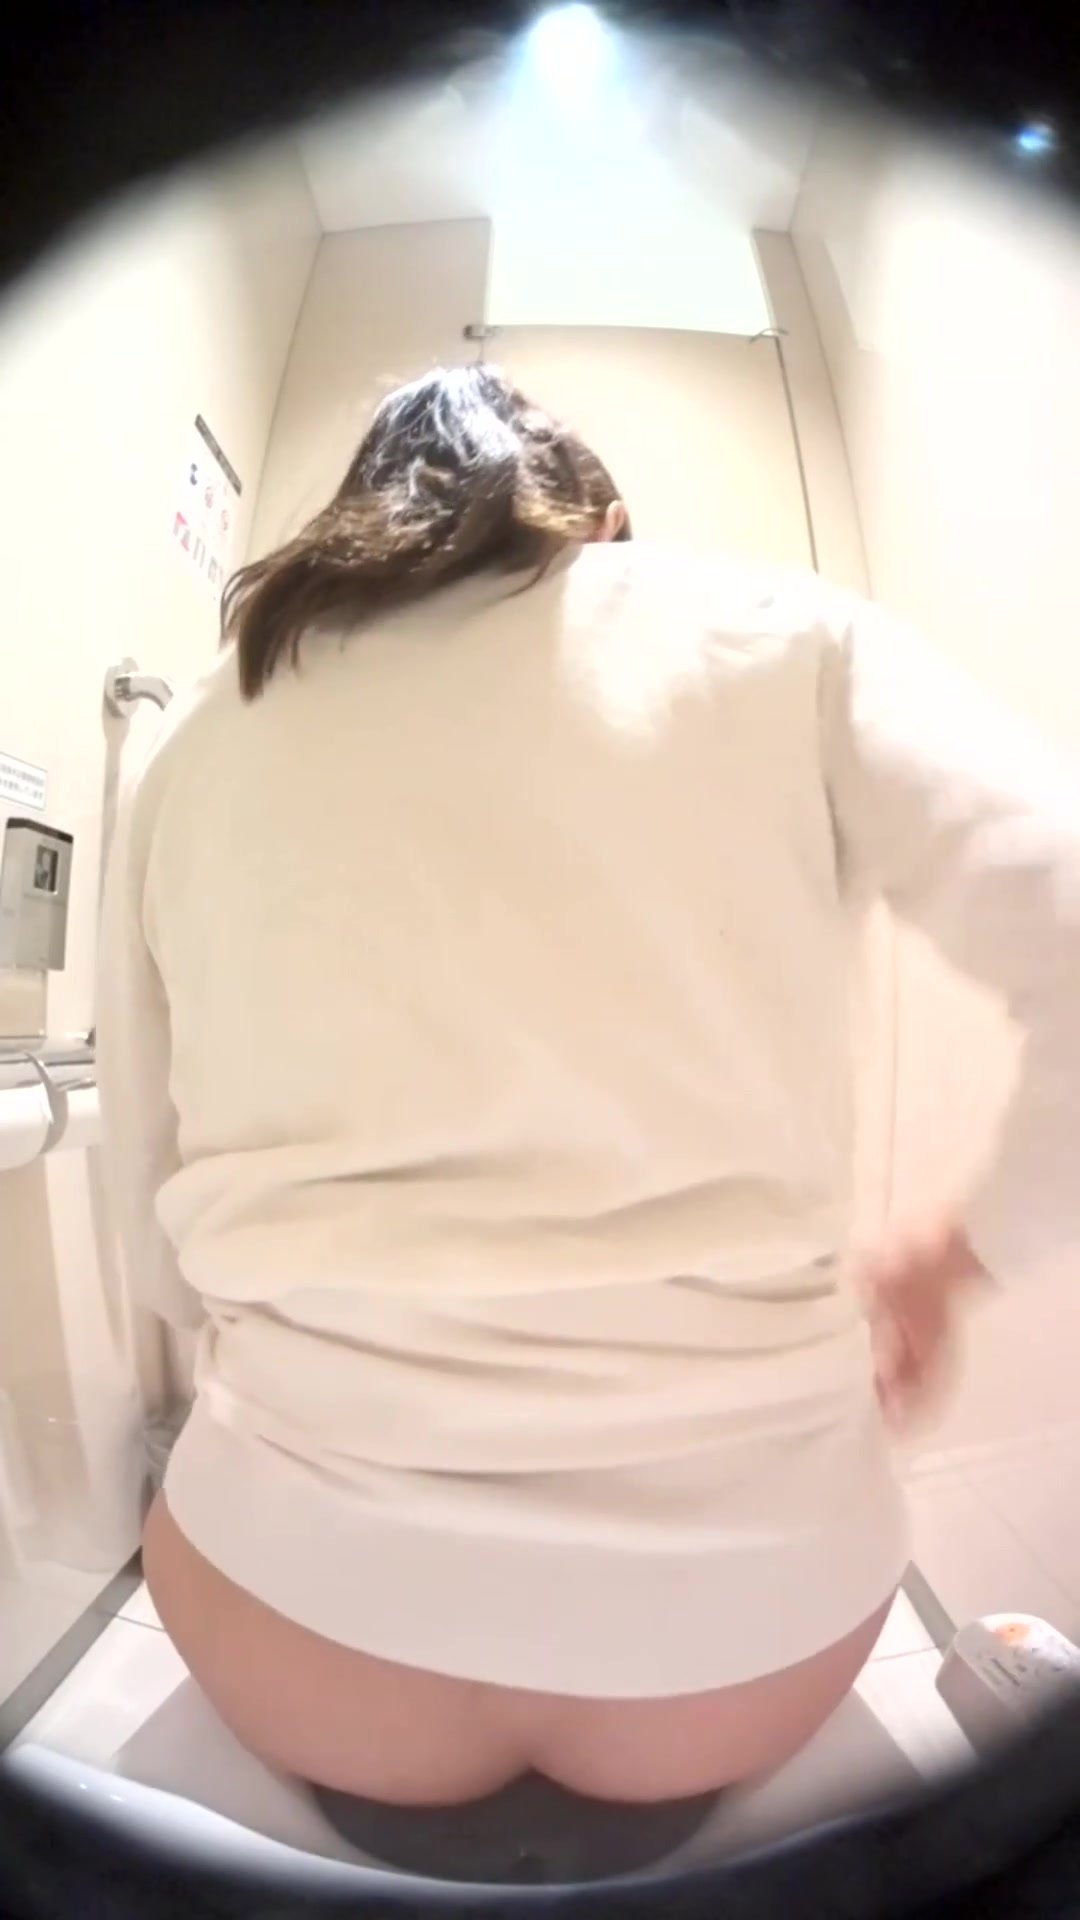 JPN woman poop dualcam/Bowlcam